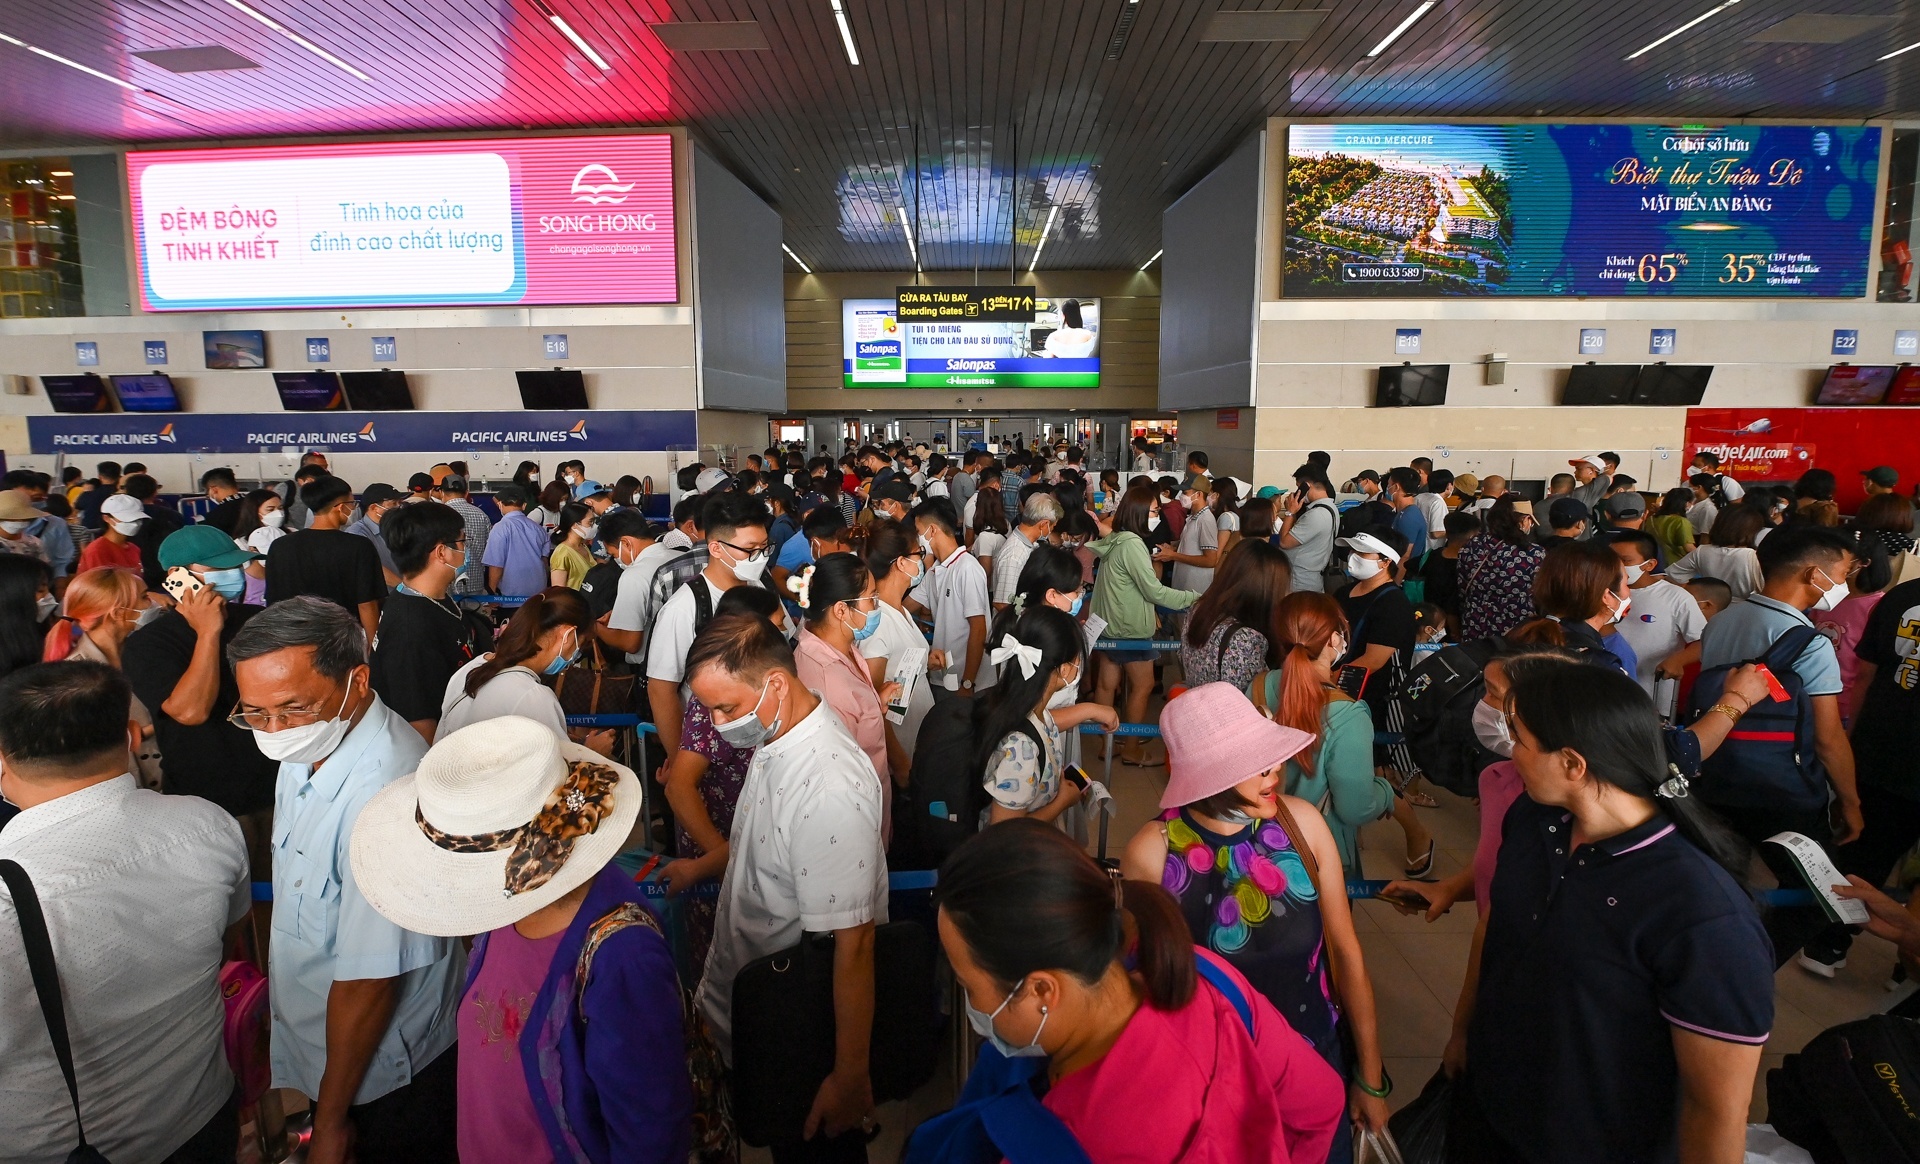 Lượng hành khách đi máy bay tăng cao trong dịp cao điểm hè. Ảnh: Việt Linh.